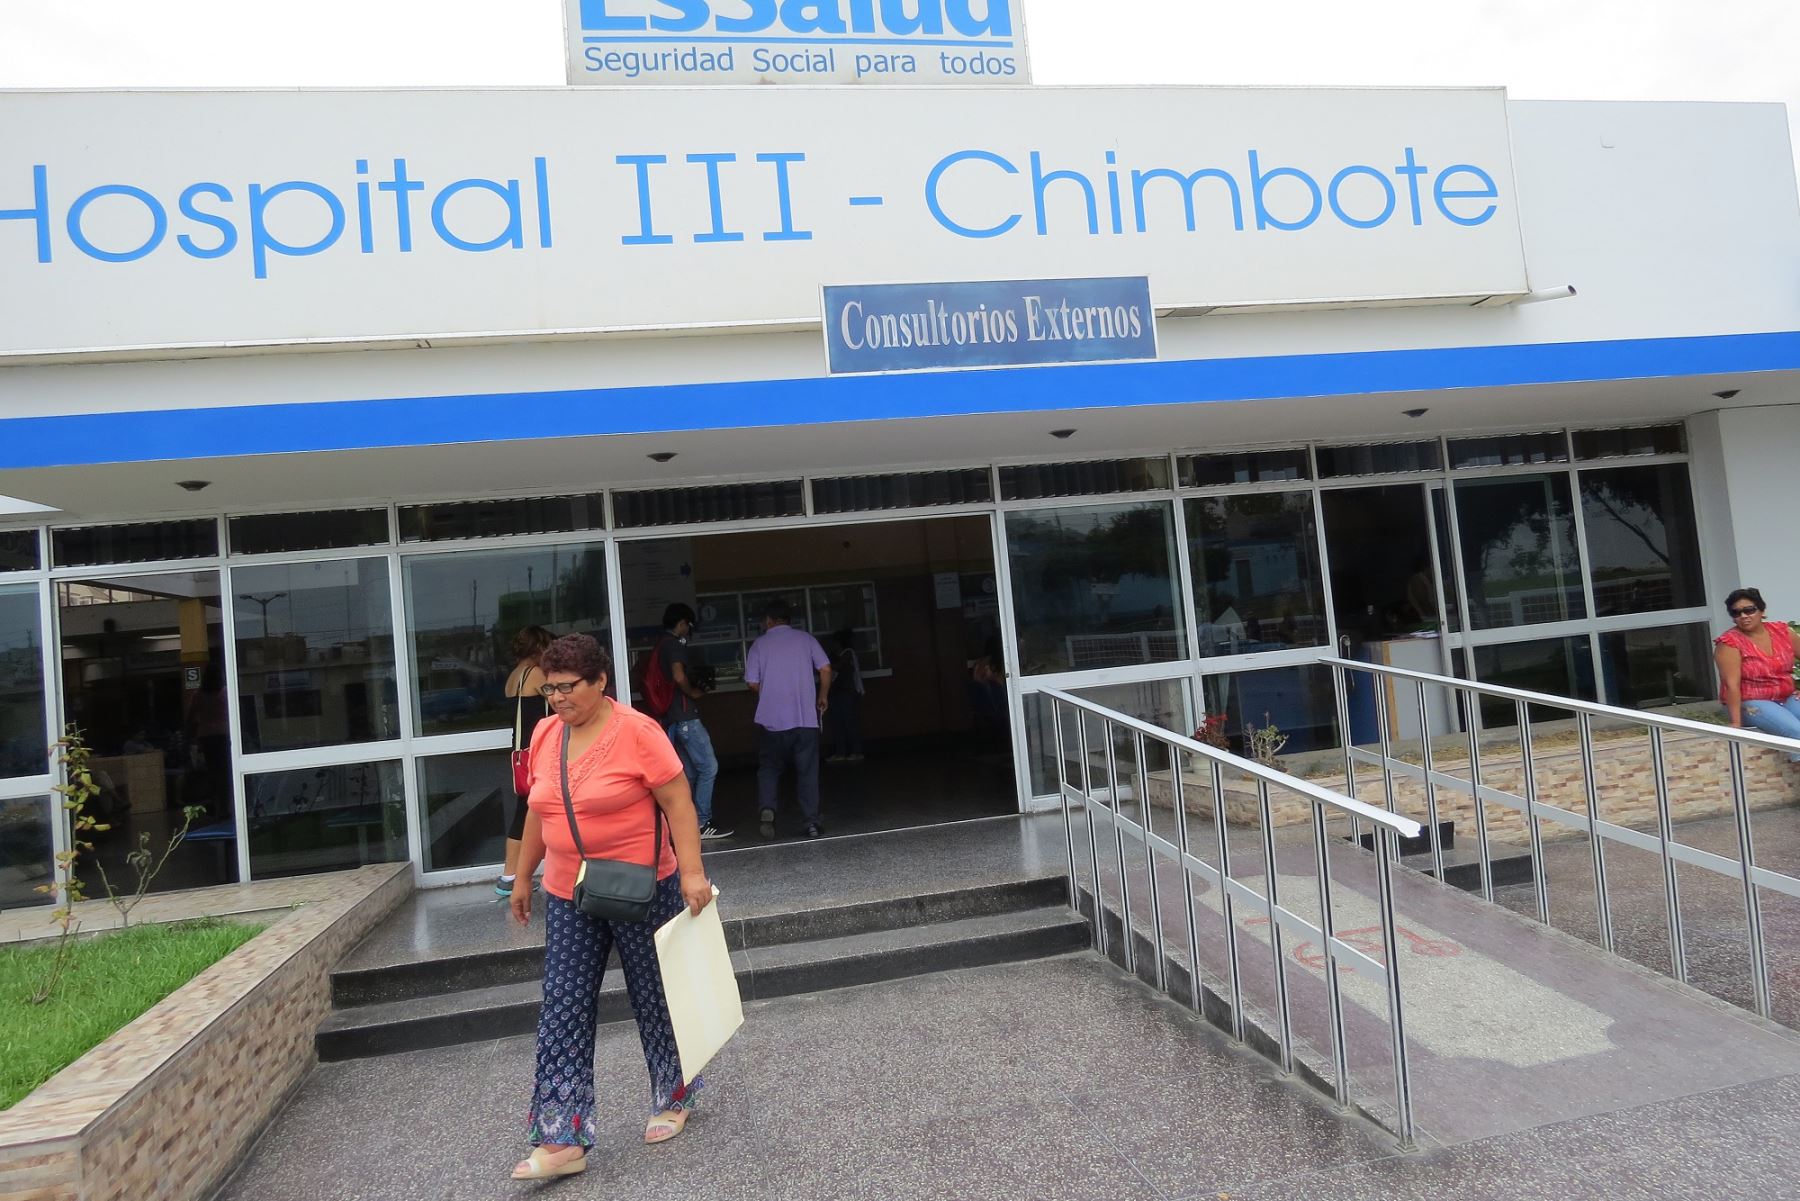 Dos pacientes con coronavirus se encuentran internadas en el Hospital III Chimbote de EsSalud. Foto: Cortesía/Gonzalo Horna